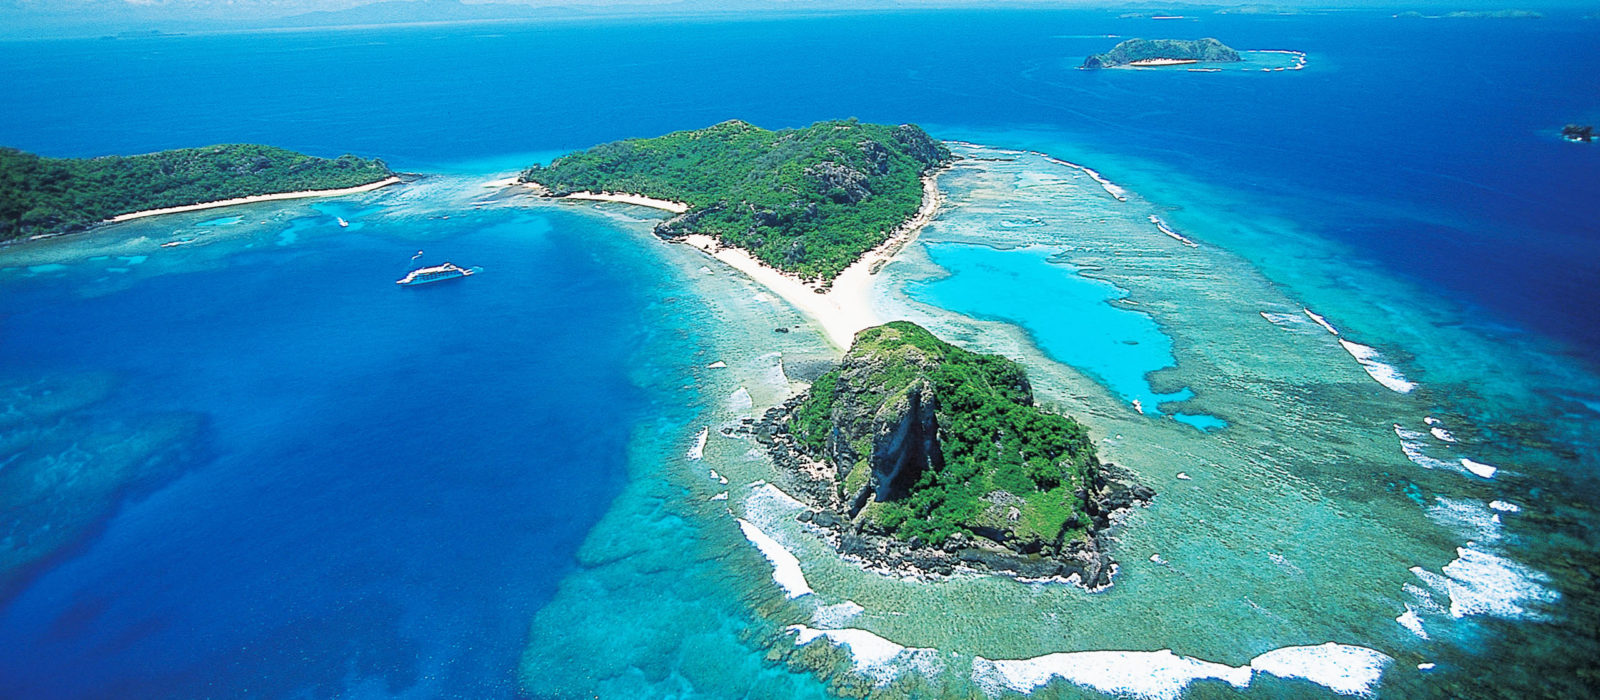 The Sacred Islands Fiji